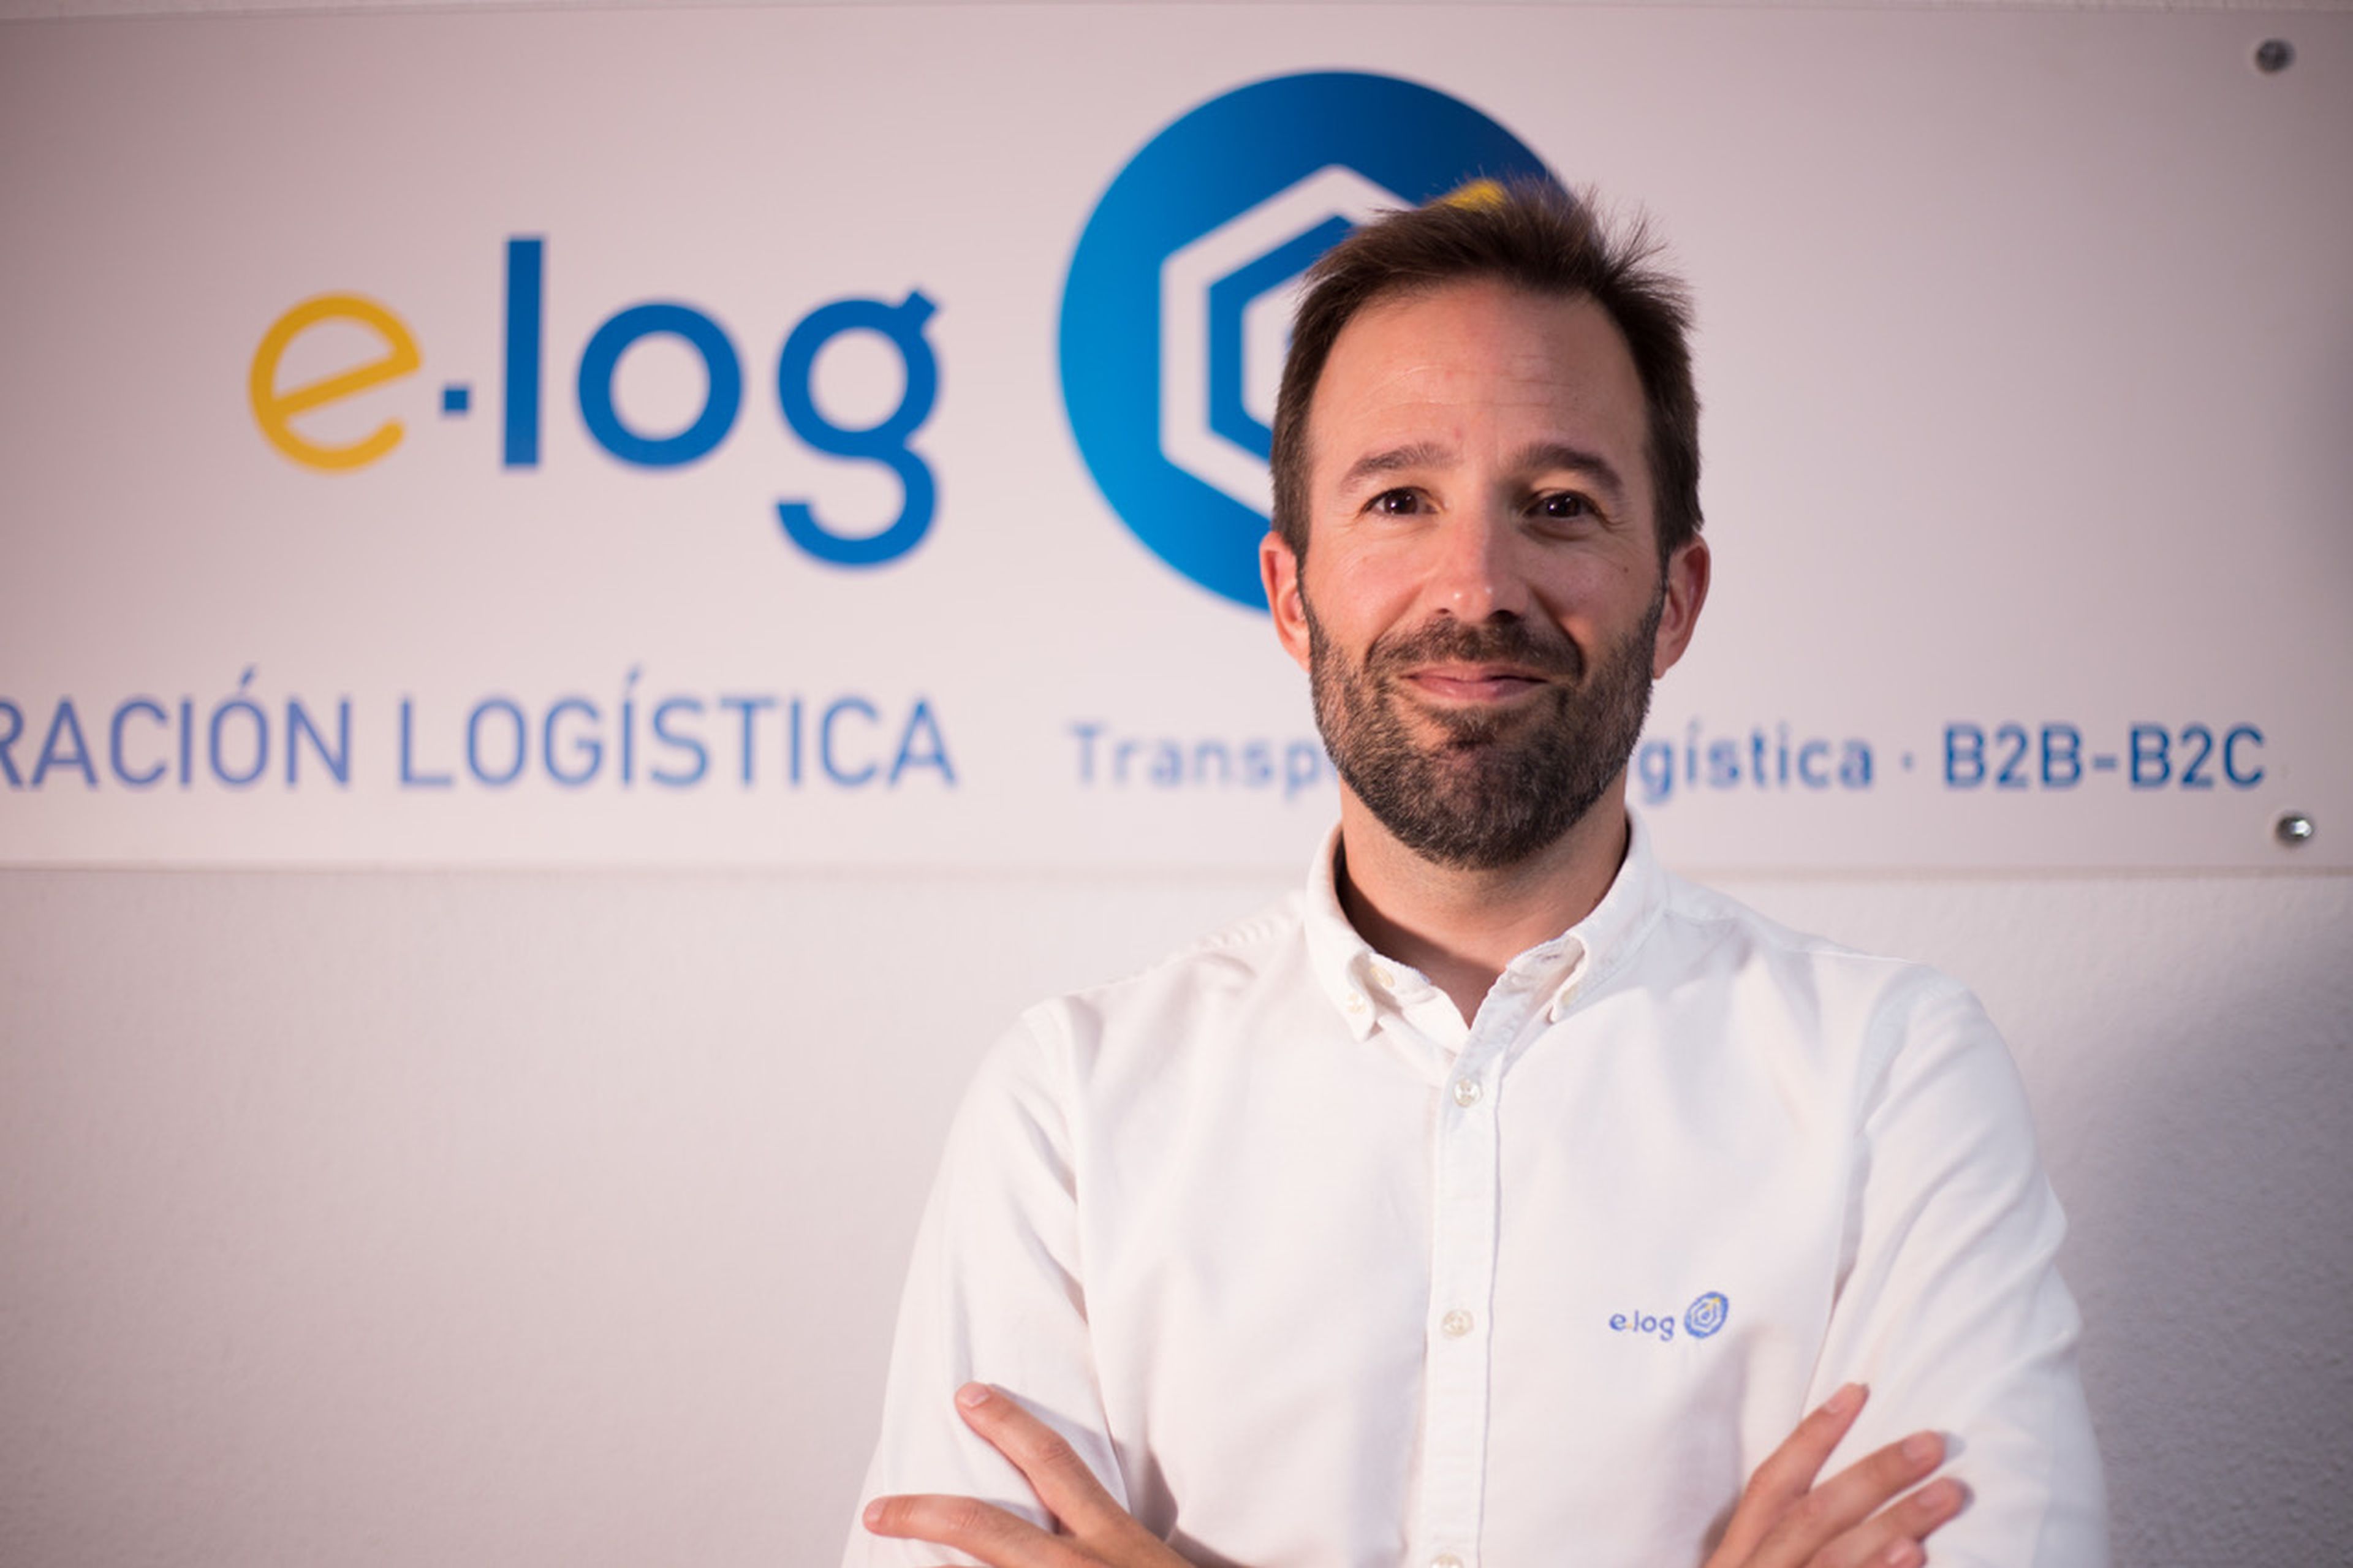 David Murillo, Director Territorial de la empresa logística e-log.